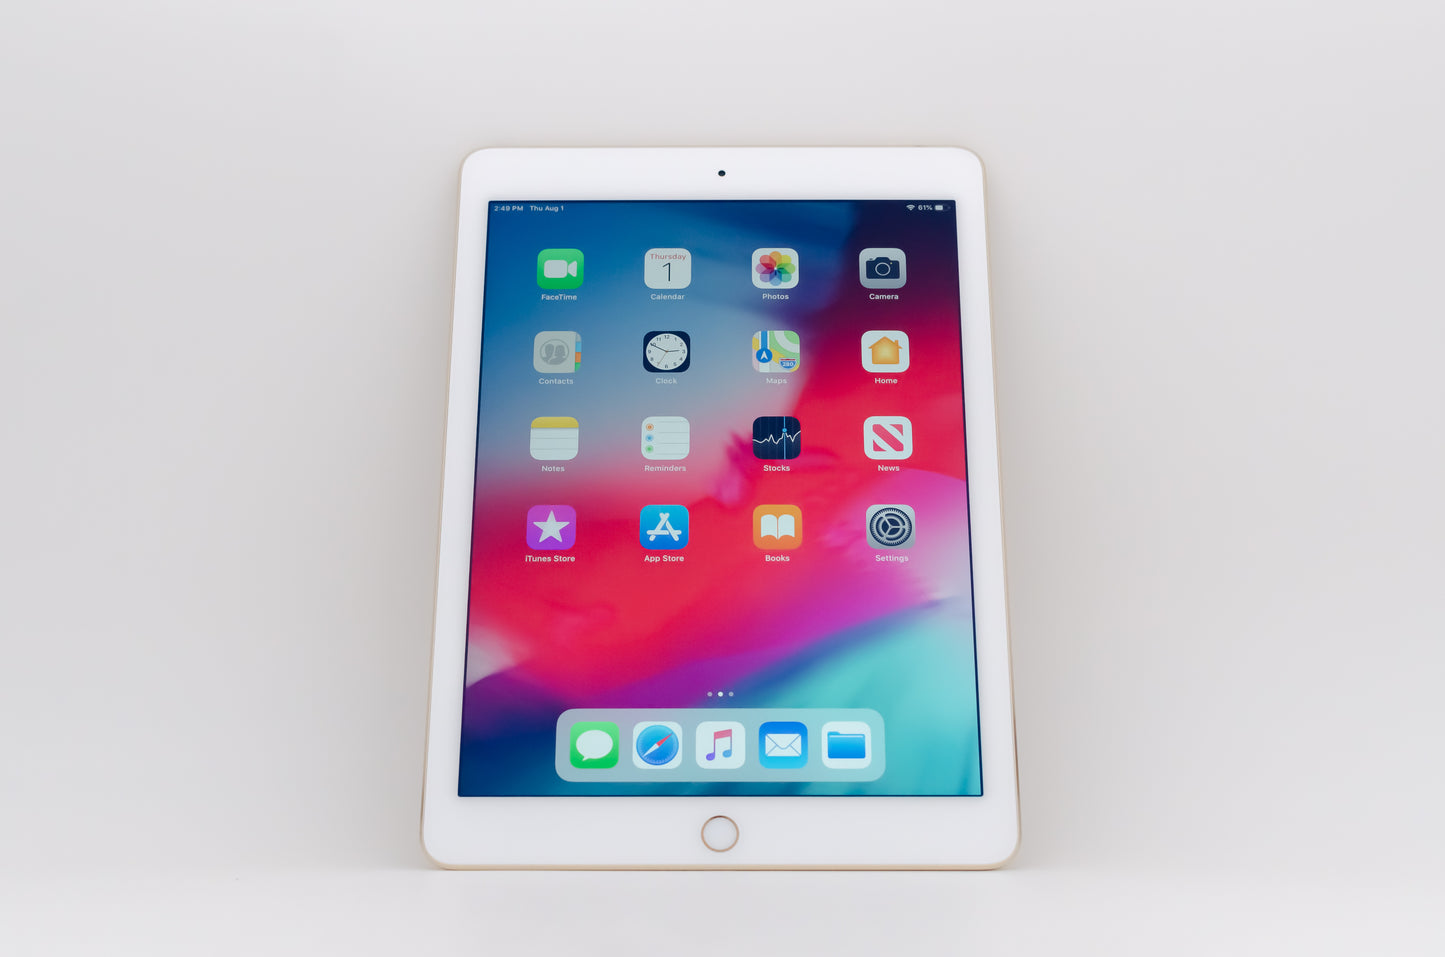 apple-2014-9.7-inch-ipad-air-2-a1566-gold/white-1